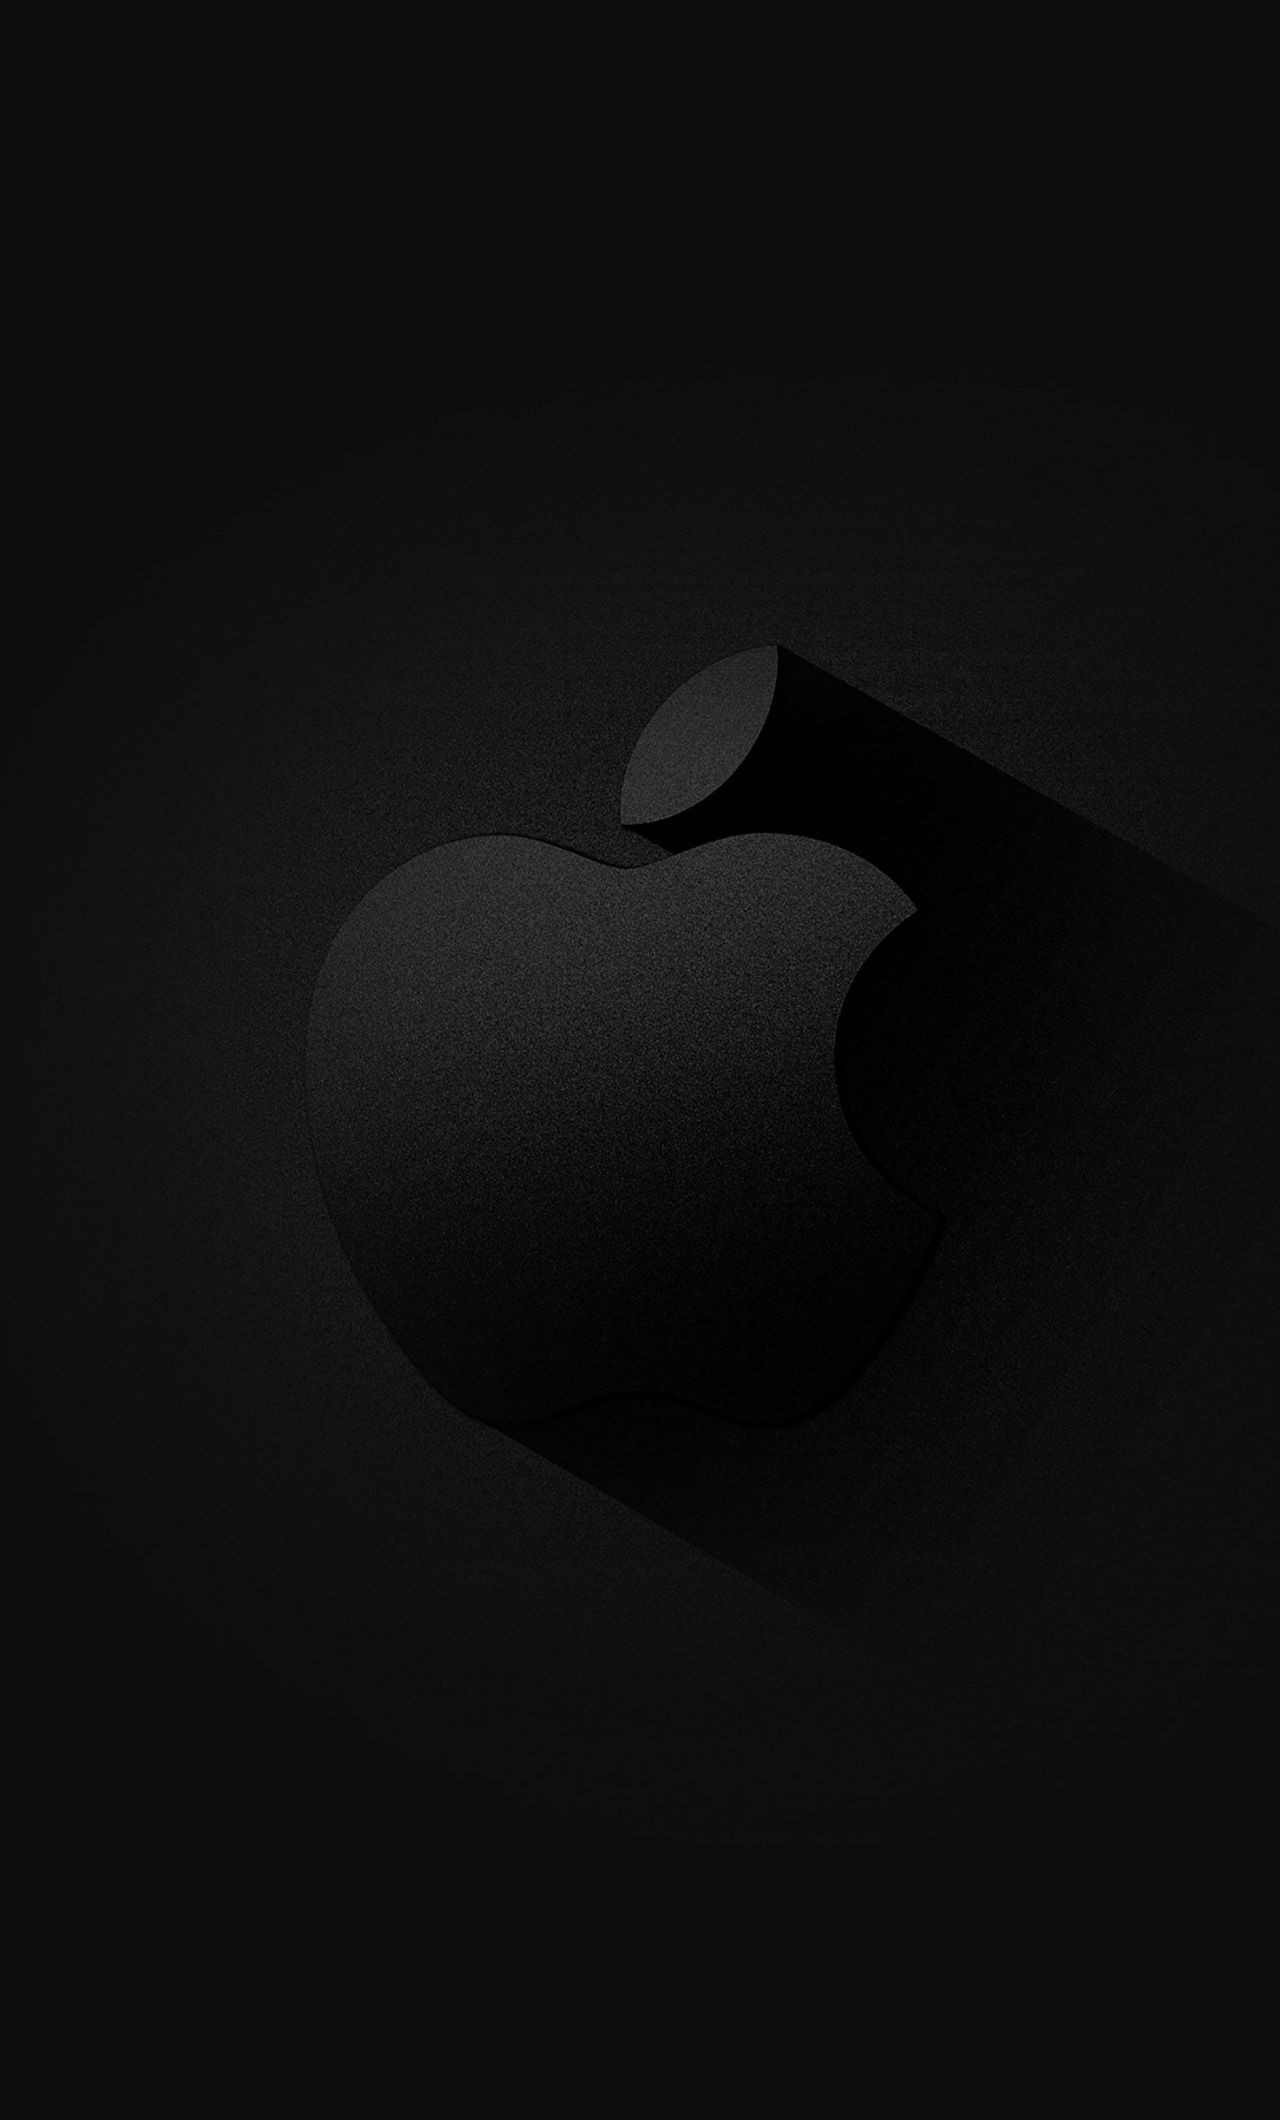 Apple logo, dark wallpaper. Apple logo wallpaper iphone, Apple logo, Apple logo wallpaper